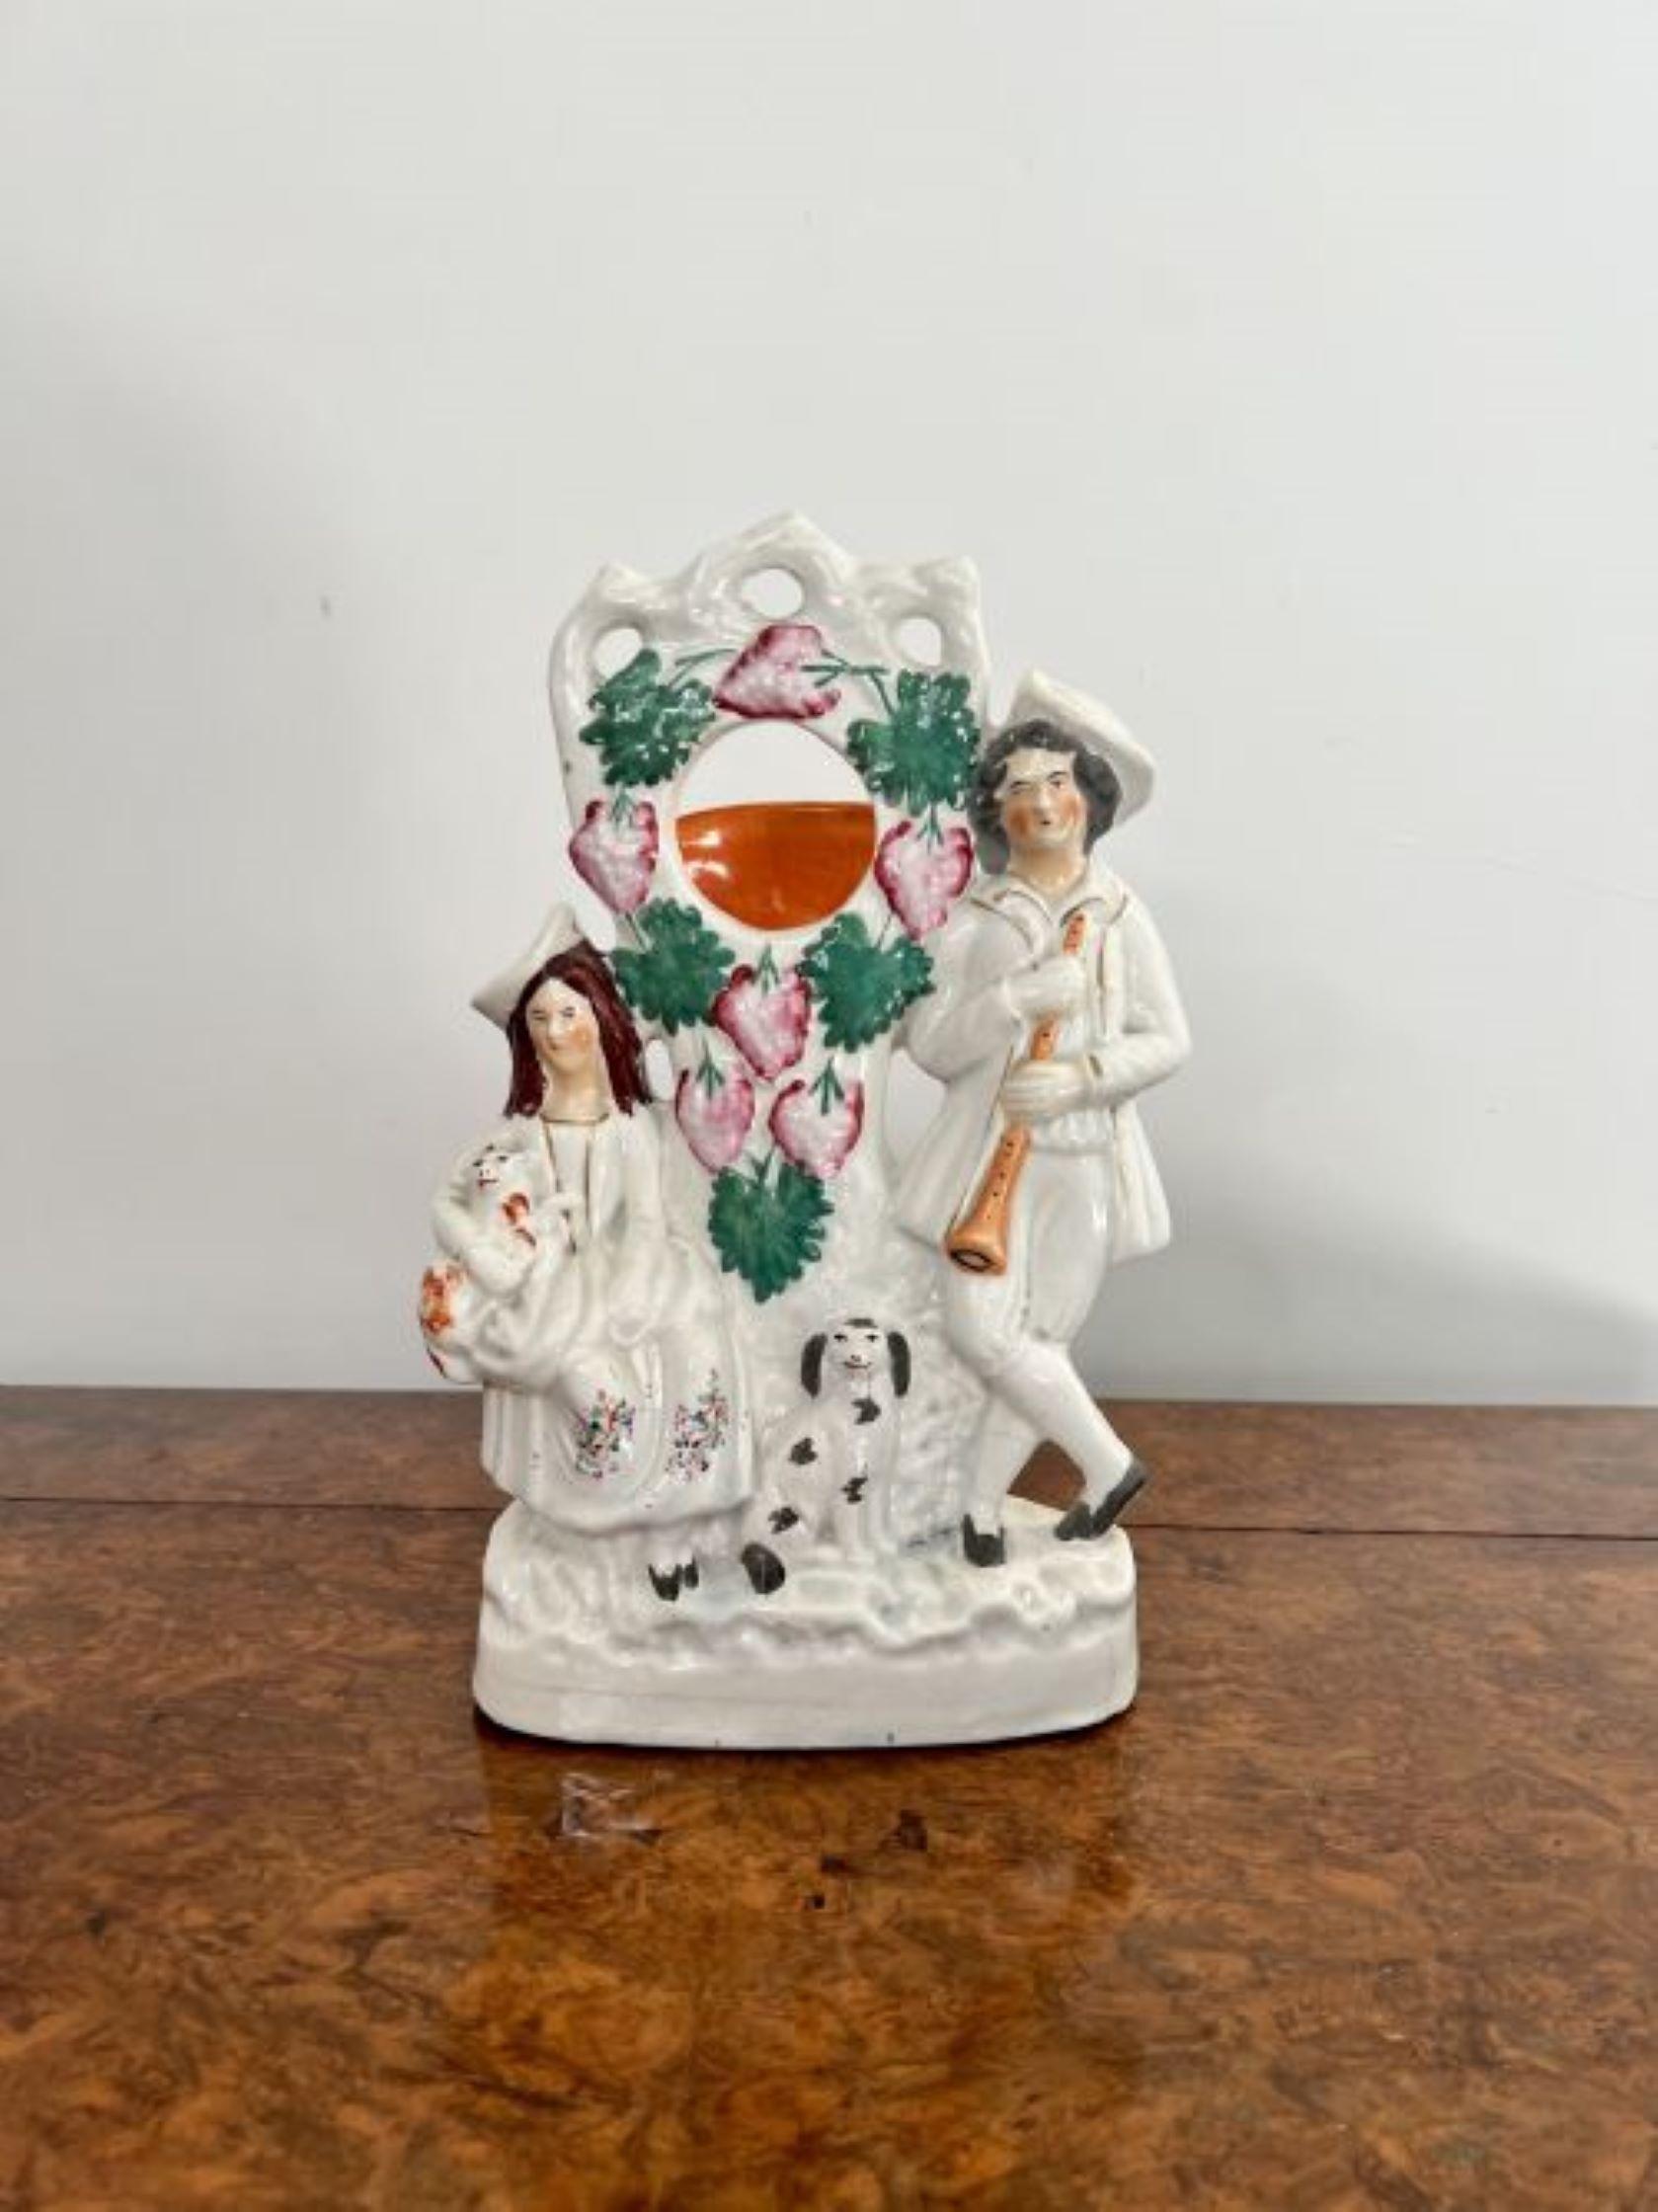 Großer antiker Staffordshire-Uhrenhalter von viktorianischer Qualität mit zwei Figuren eines Mannes, der ein Instrument hält, einer Dame, die ein Schaf hält, und einem Hund in der Mitte, verziert mit handgemalten rosafarbenen Blumen und grünen